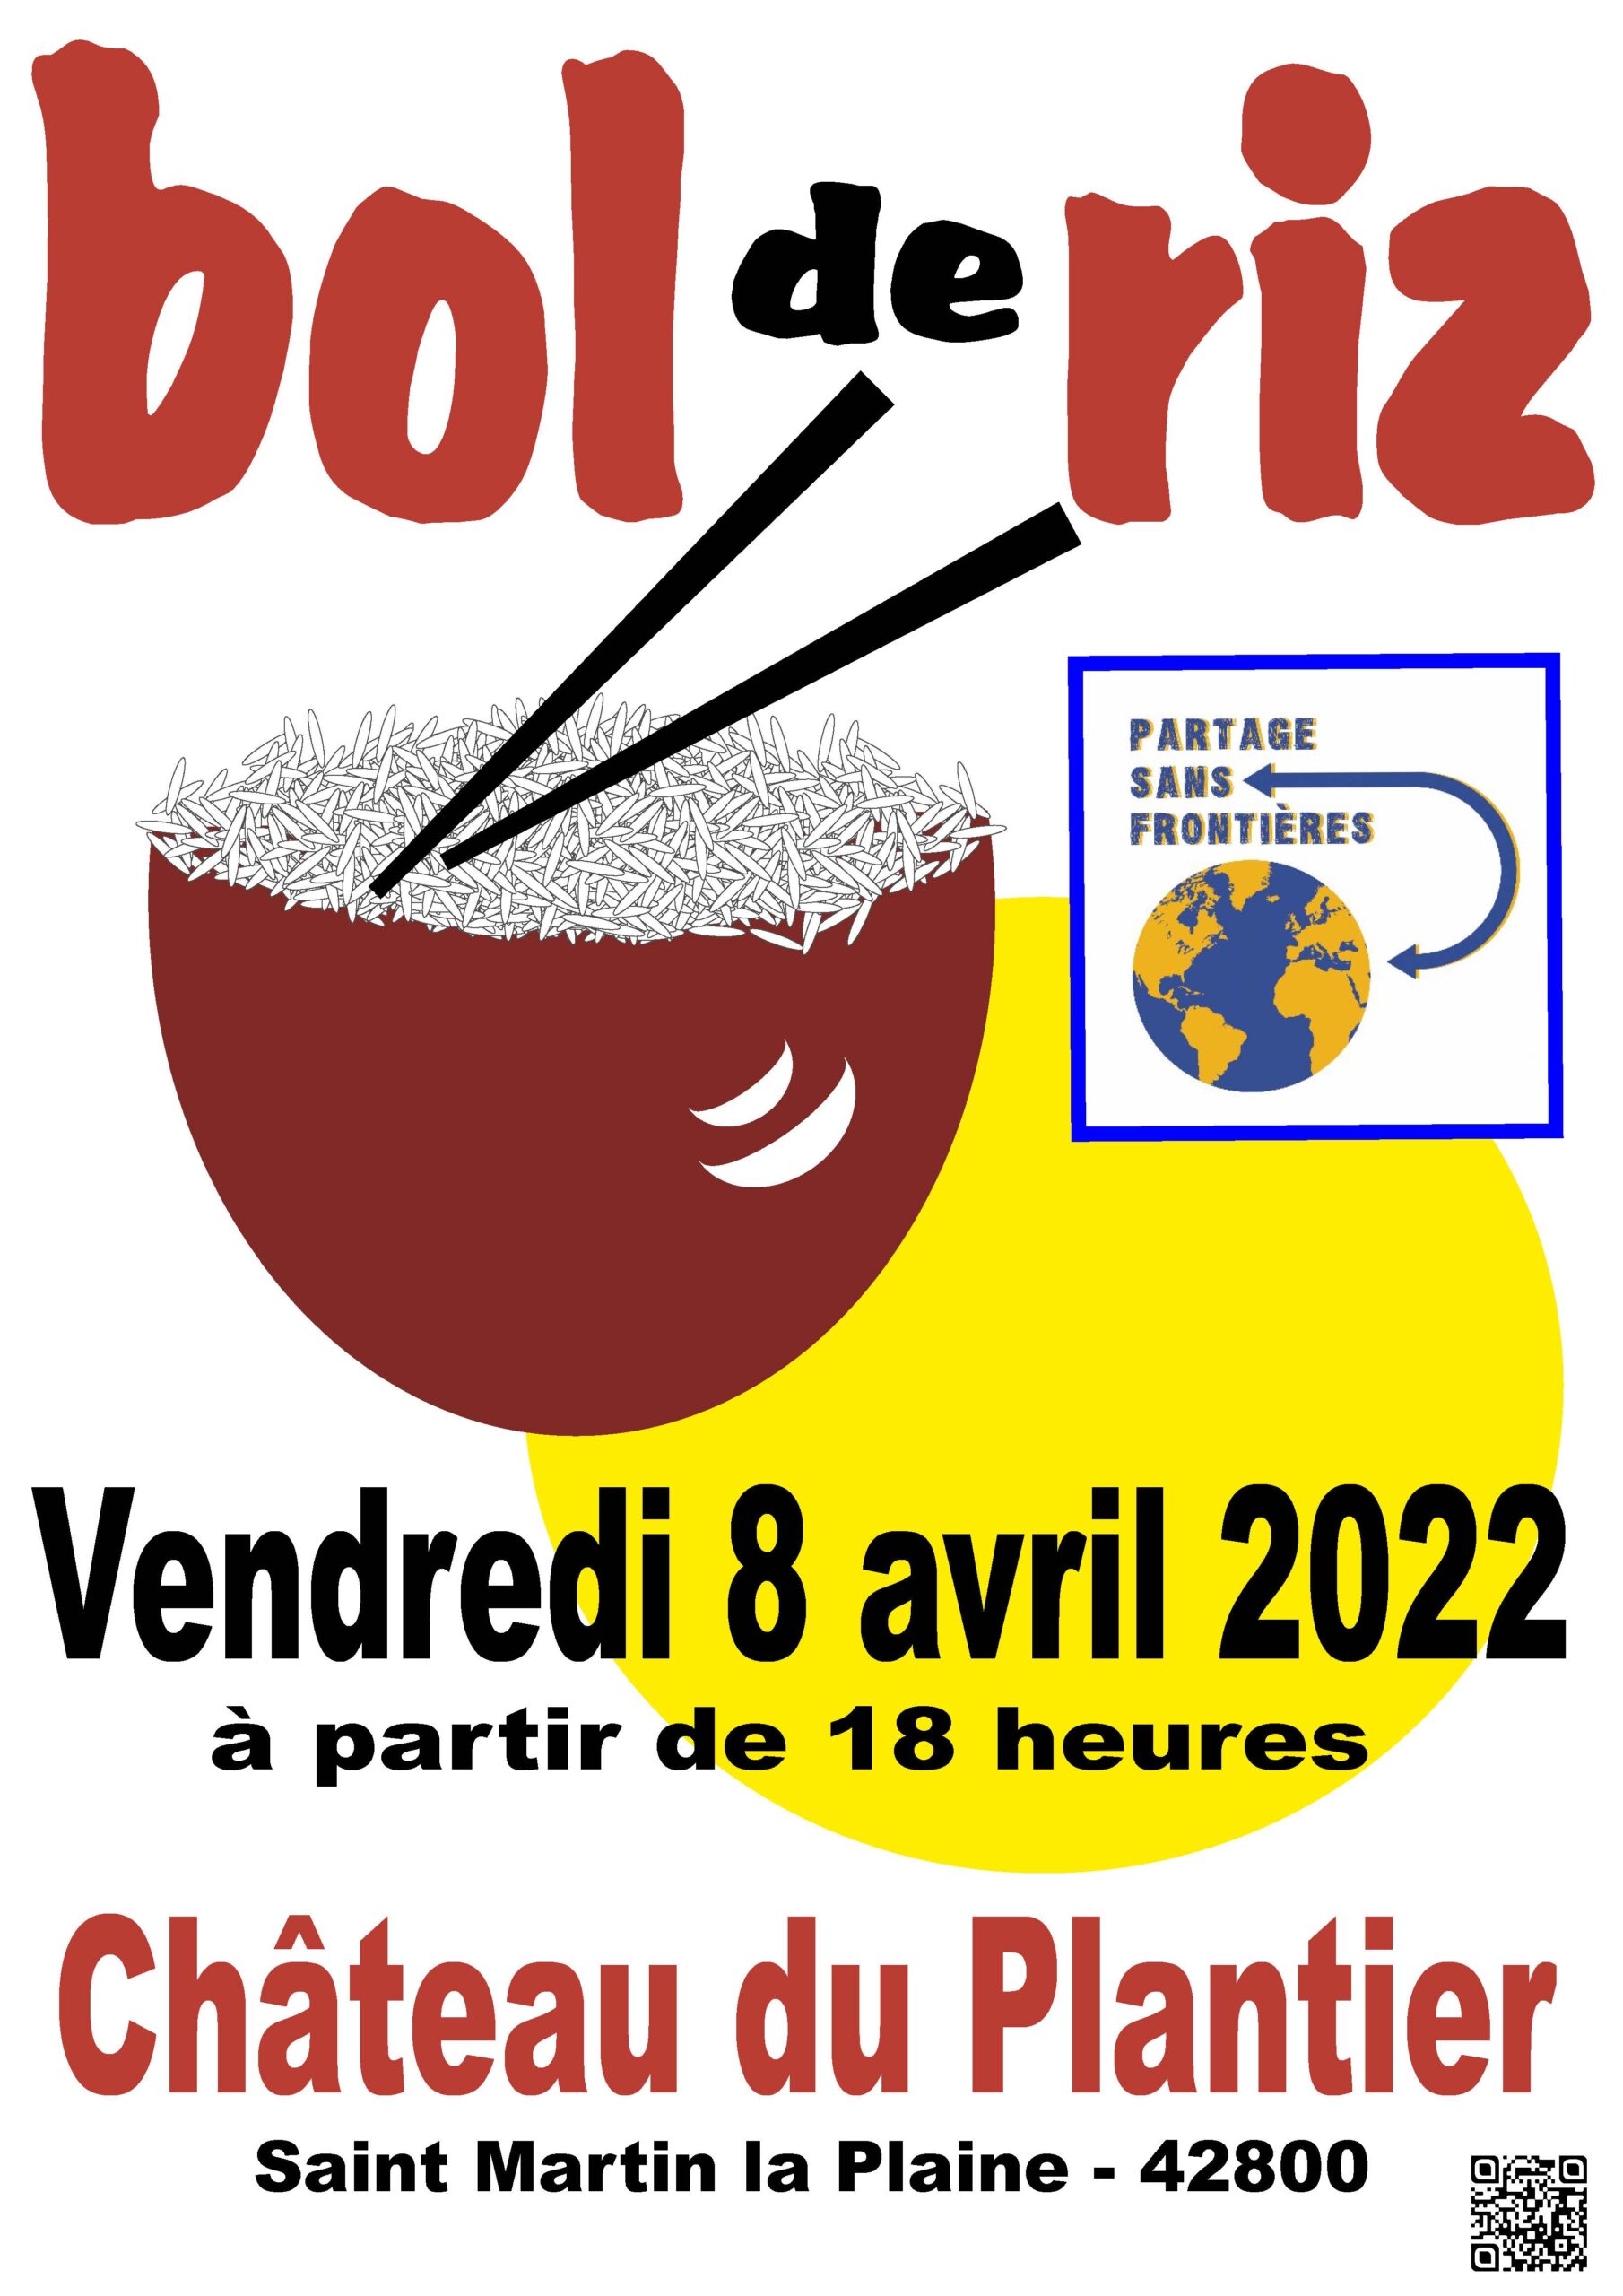 Le bol de riz 2022 de Saint-Martin-la Plaine est annoncé